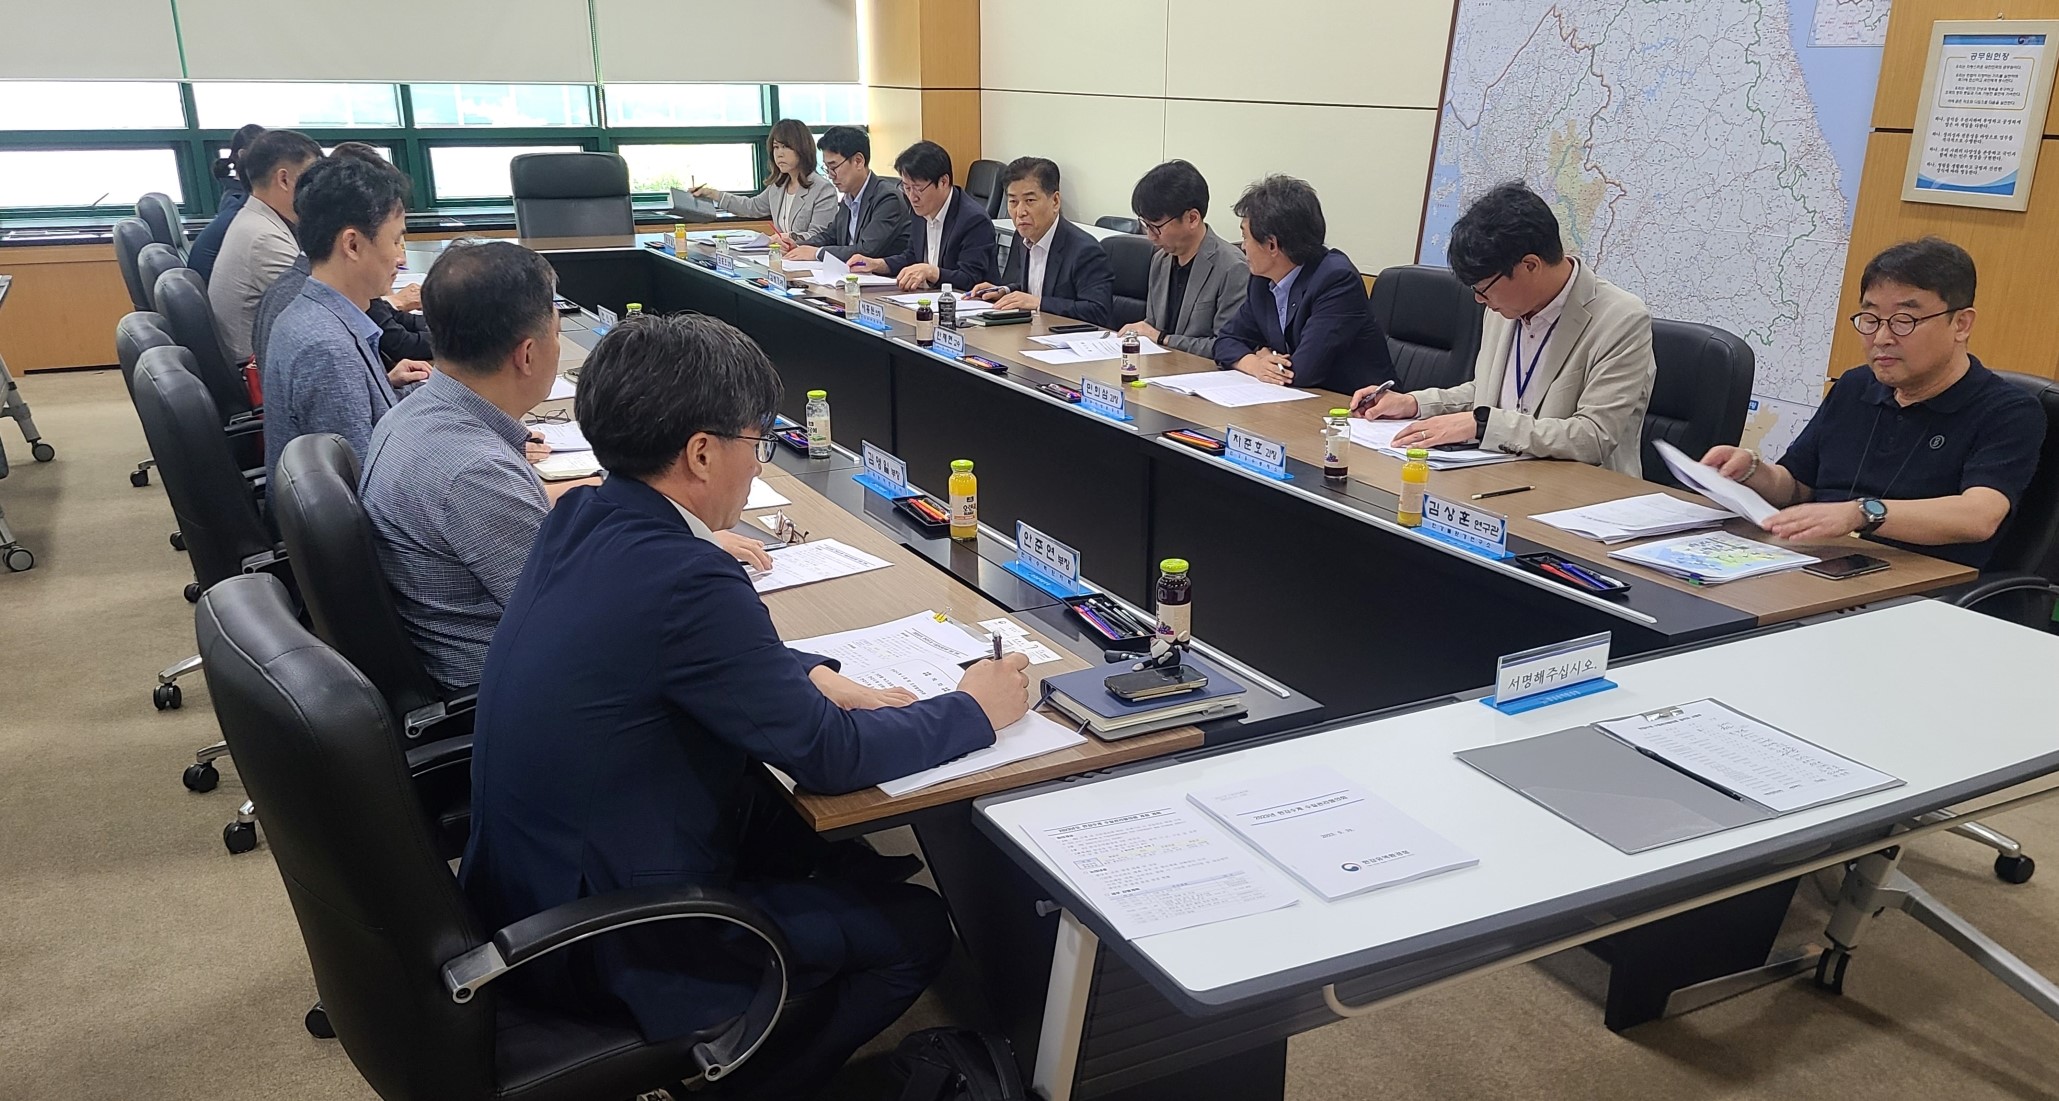 5월 31일 한강유역환경청에서 열린 한강수계 수질관리협의회에서 참석자들이 수질 대책에 대해 논의하고 있다.